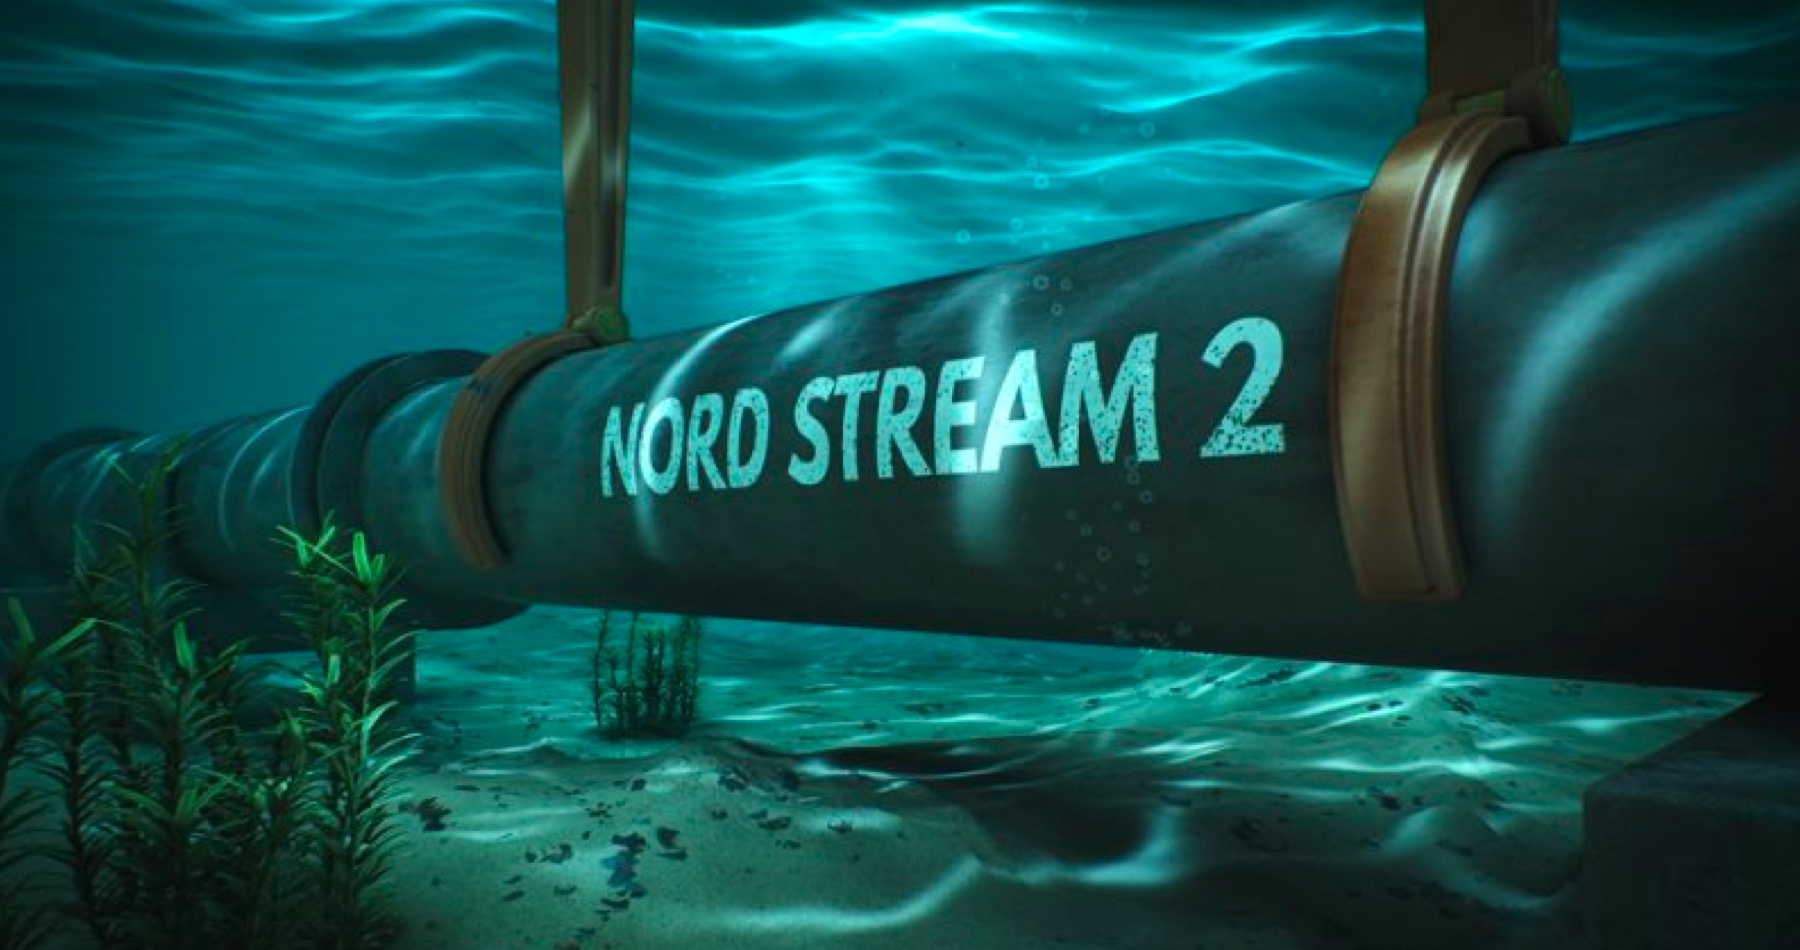 Nemecké automobilky požadujú opravu plynovodu Nord Stream kvôli dodávkam lacného plynu z Ruska, ako aj obnovenie prevádzky jadrových elektrární v Nemecku